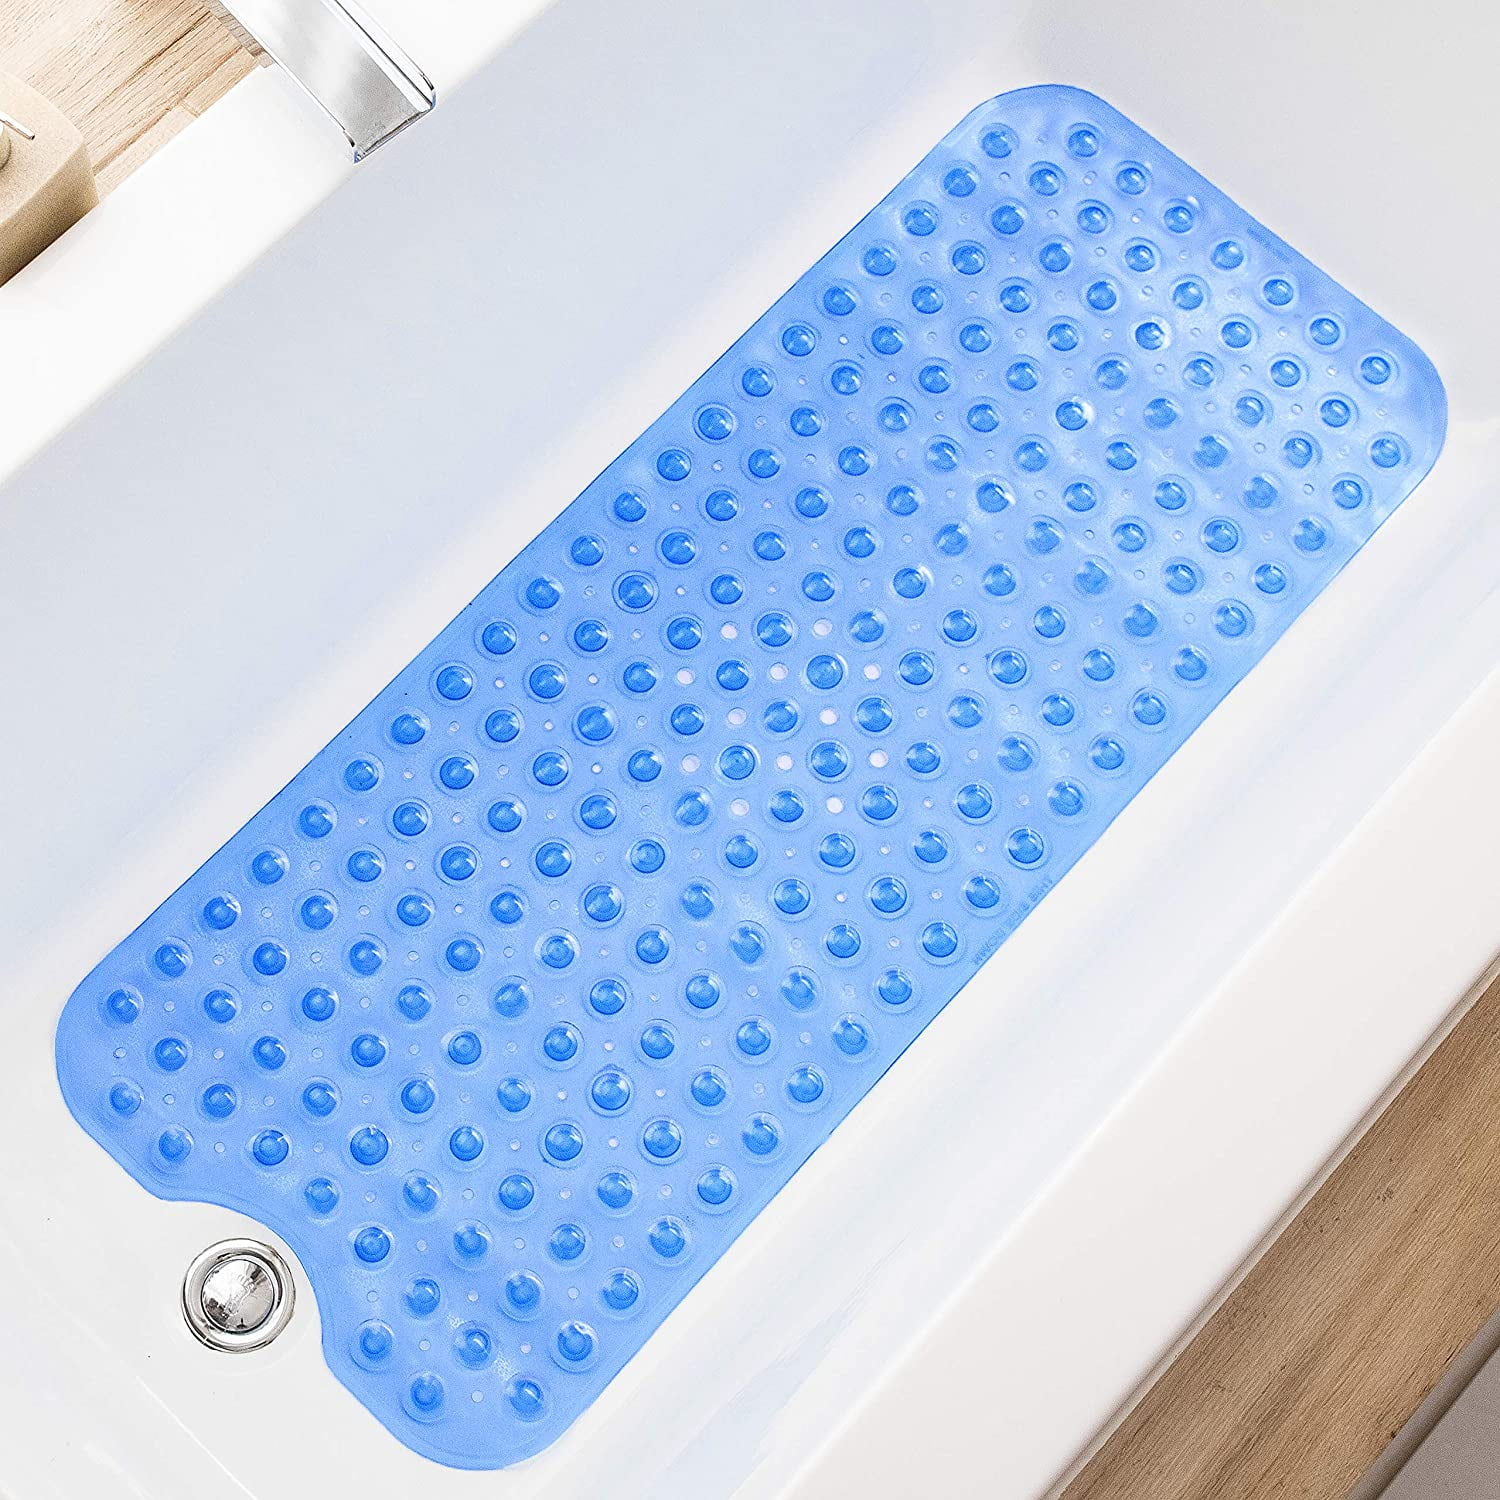 MatXwell Outdoor Bath Shower Mat Non Slip, 334x236 inch Extra